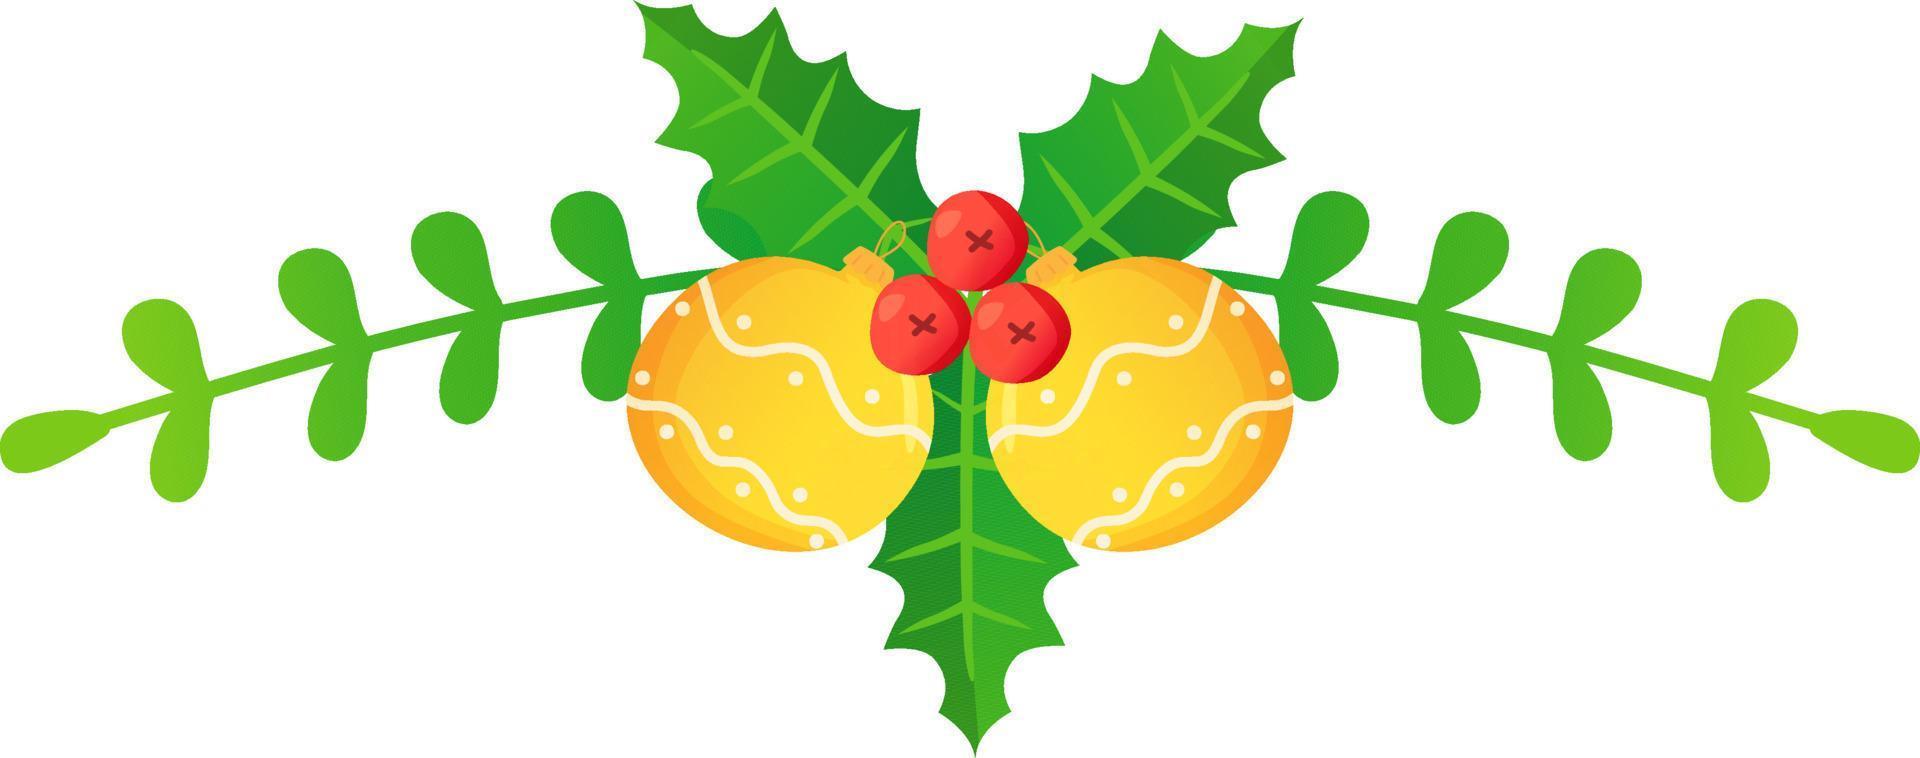 Natale intestazione o divisore pino ramo agrifoglio abete campana fiore palle vettore